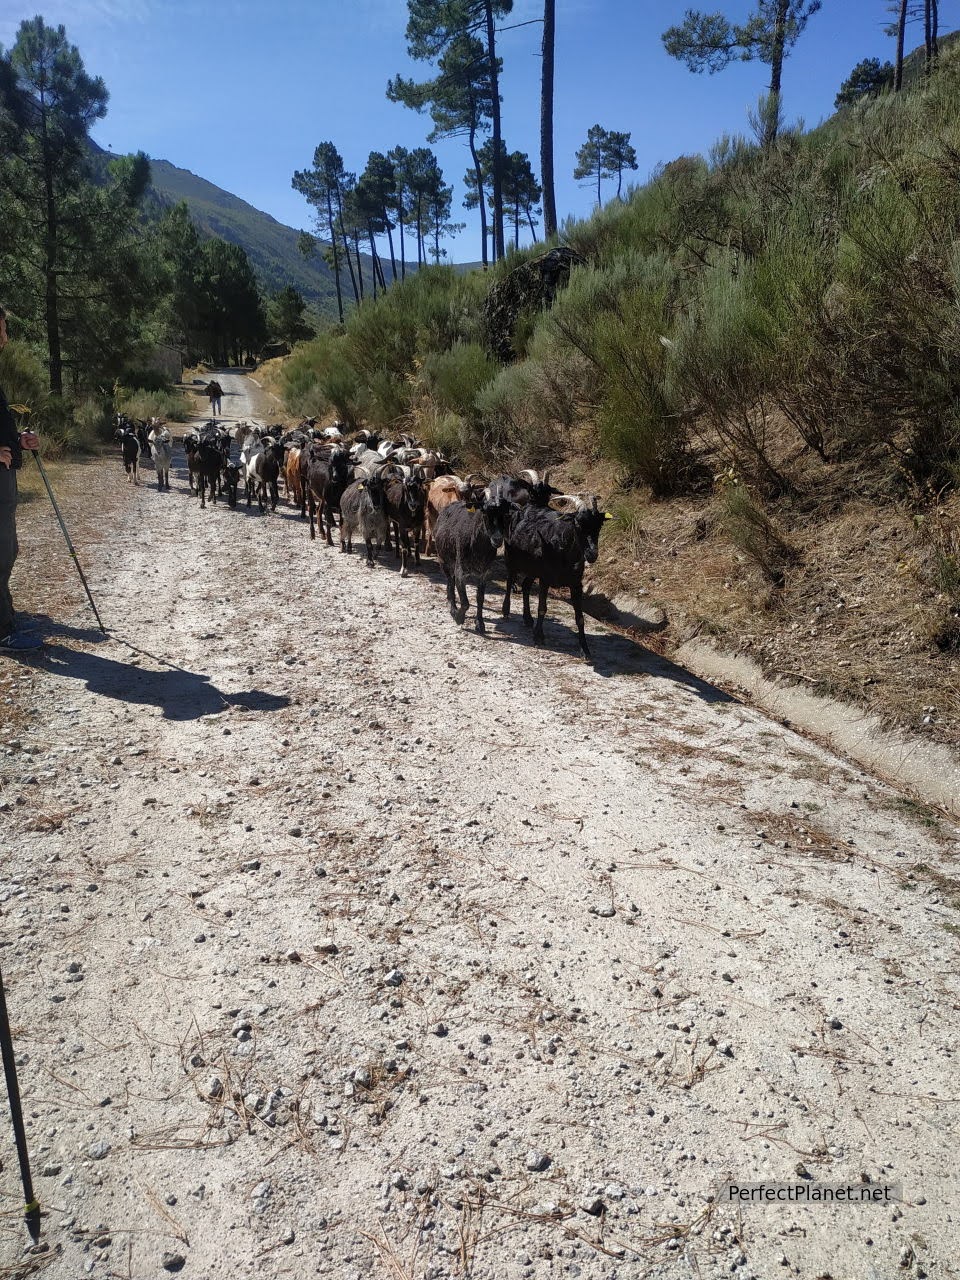 Herd of goats